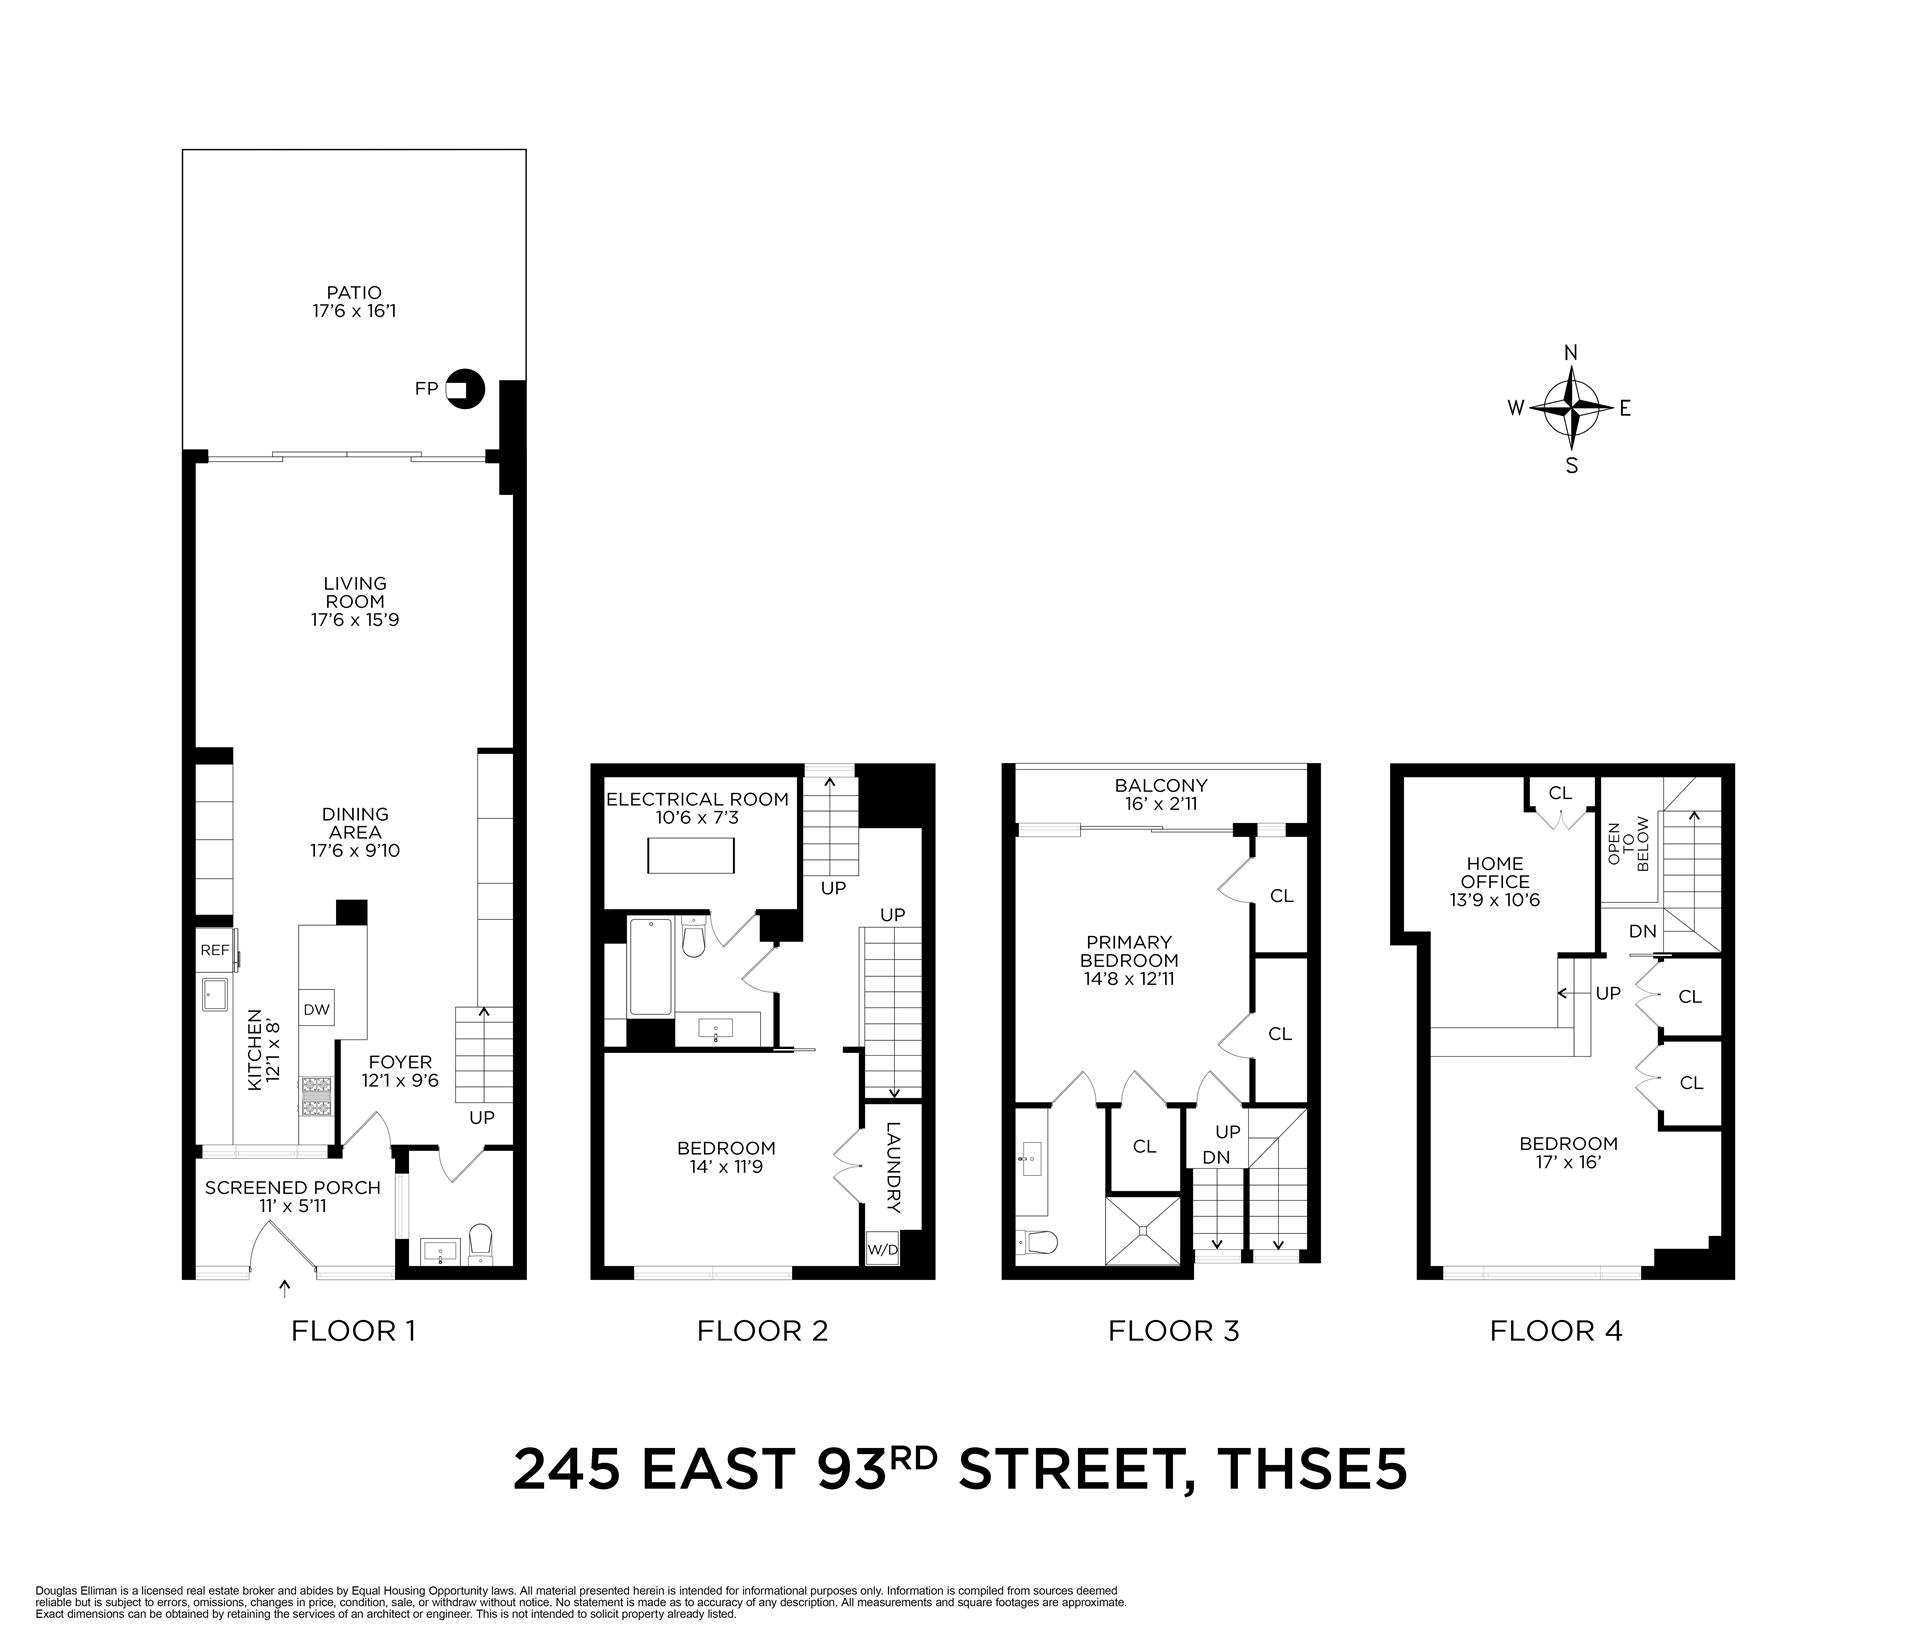 Floorplan for 245 East 93rd Street, THSE5